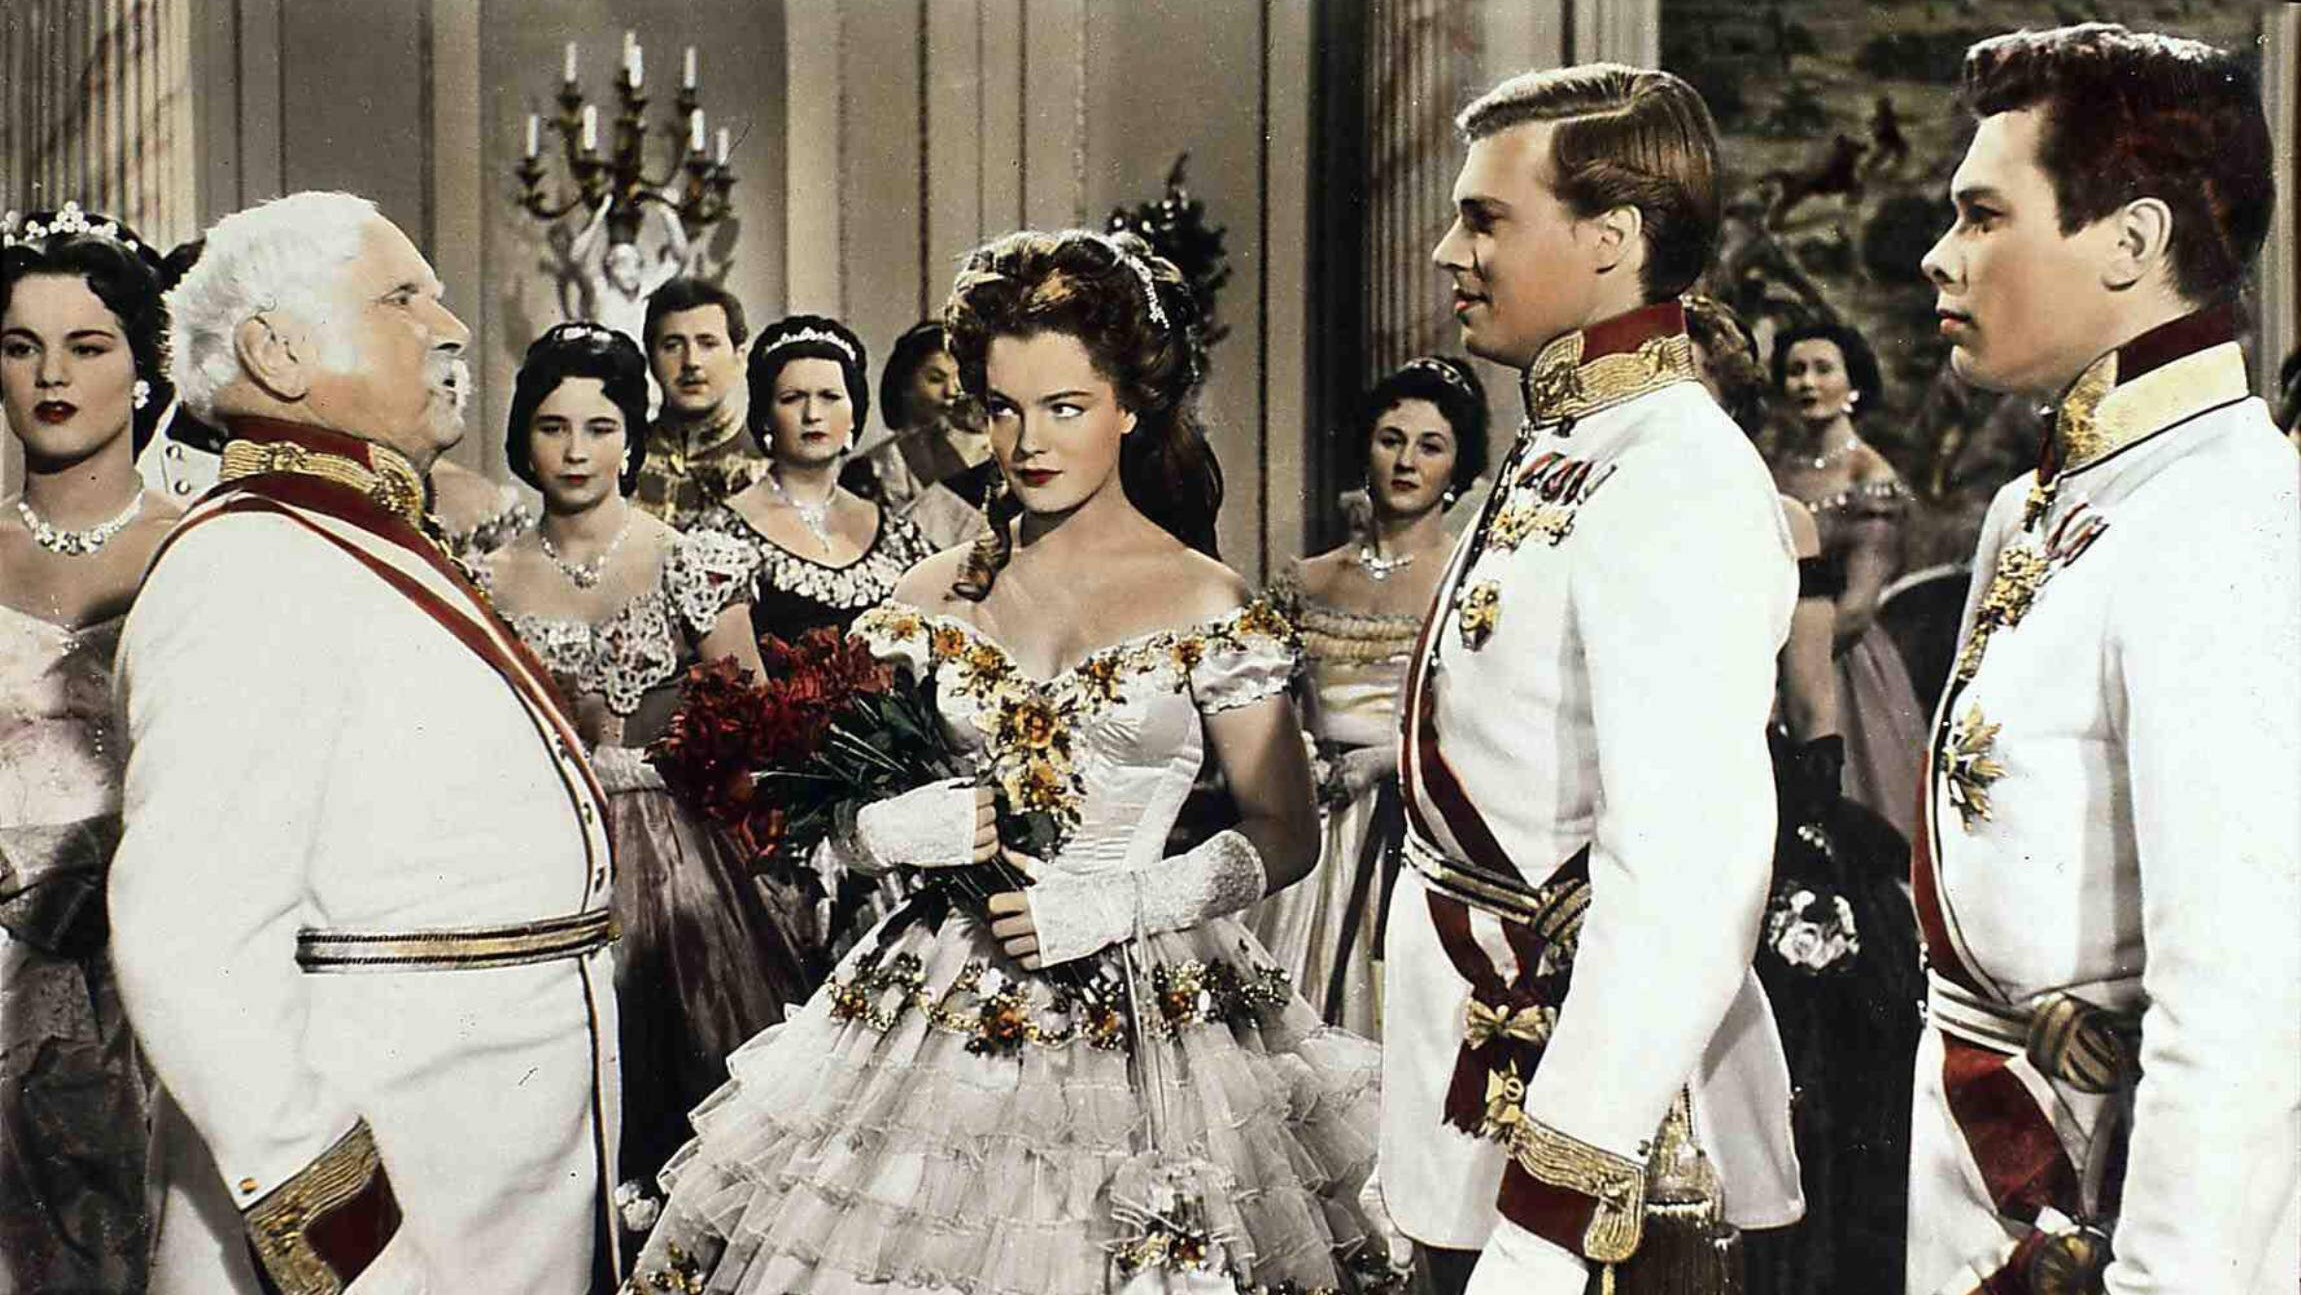 Eine Szene aus einem Sissi-Film: Kaiser Franz Josef von Österreich (Karlheinz Böhm) verkündet zum Erstaunen aller seine Verlobung mit Sissi (Romy Schneider).